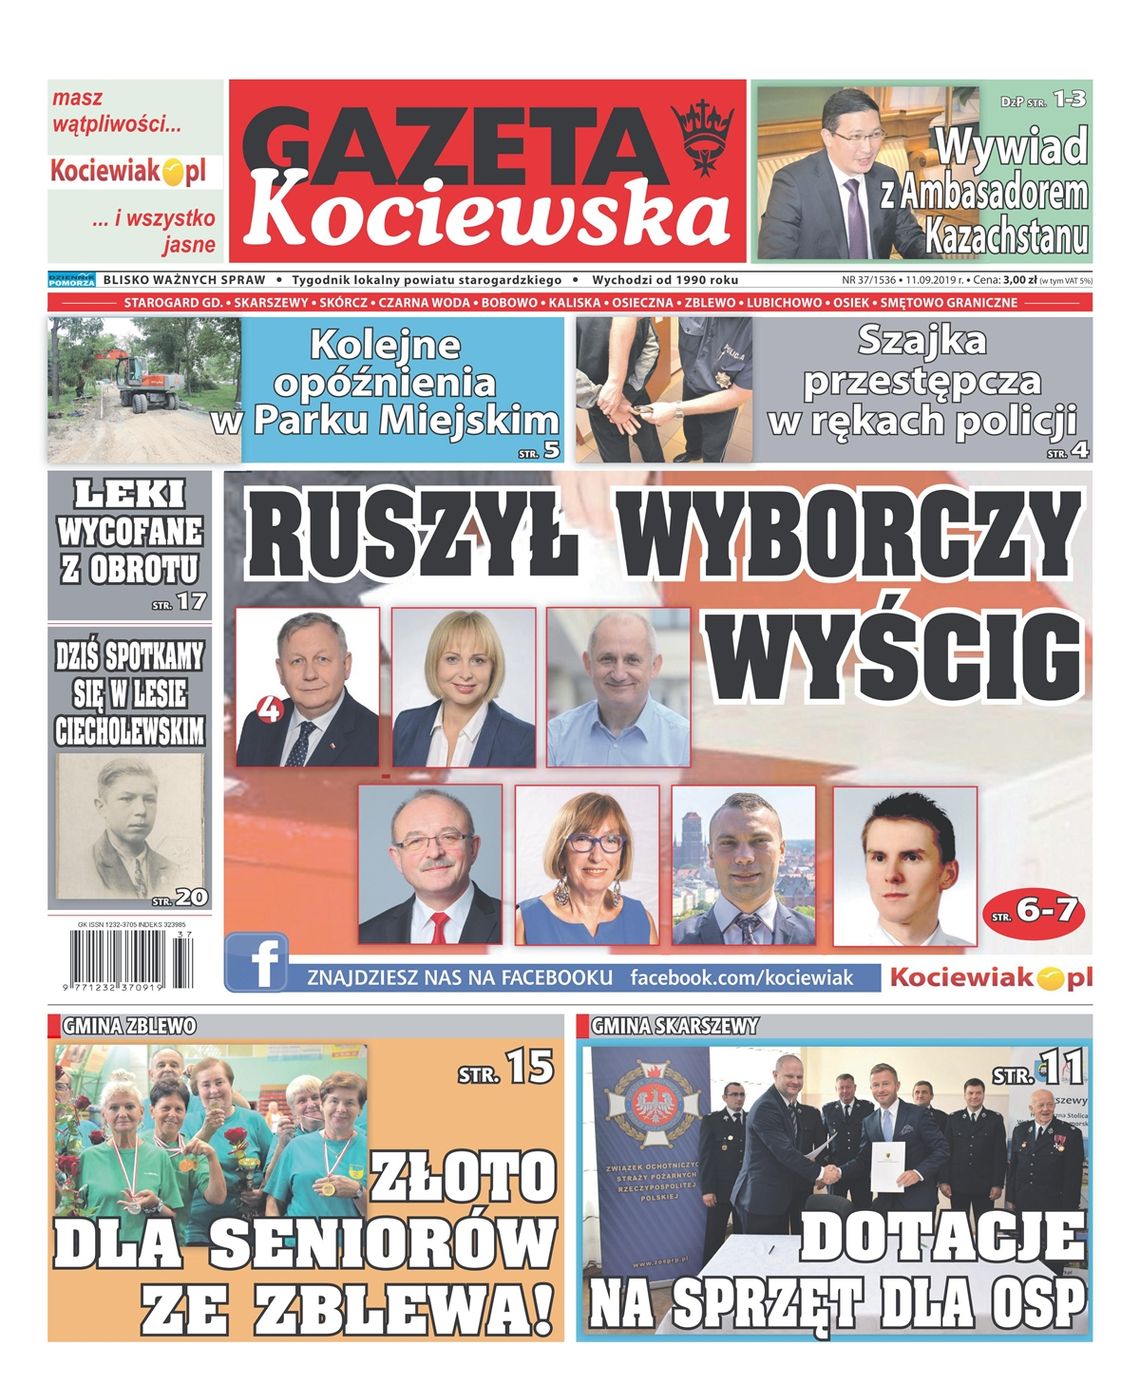 Najnowsza Gazeta Kociewska juz w kioskach